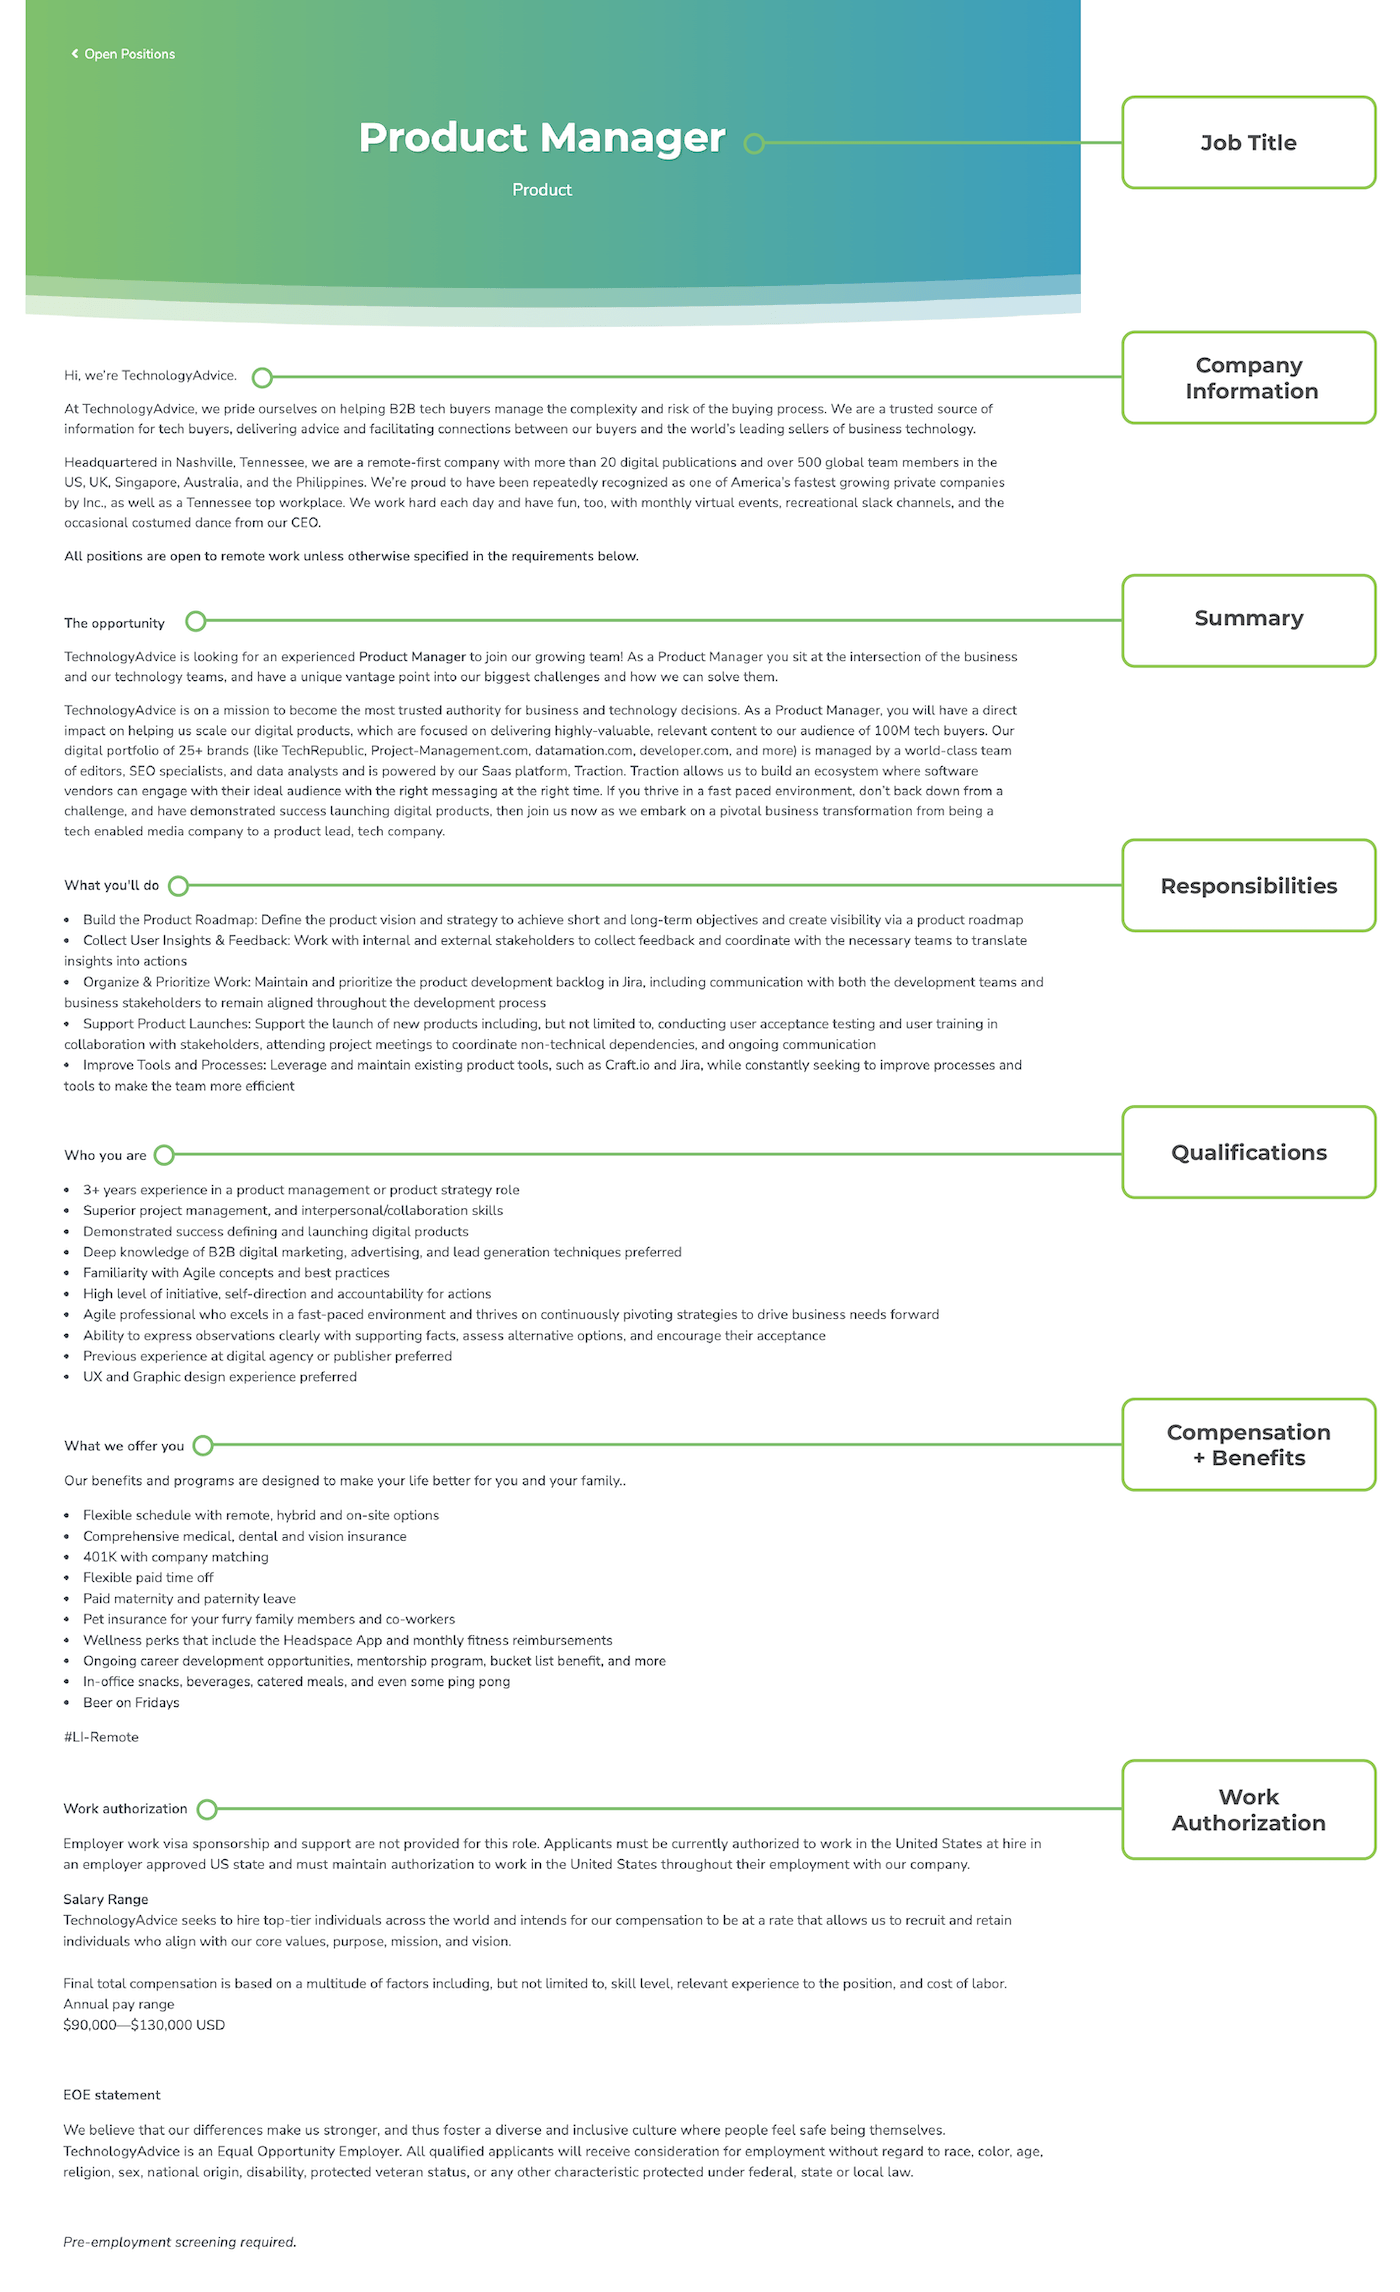 Screenshot of a complete job description with labels indicating the various segments of a successful job description.